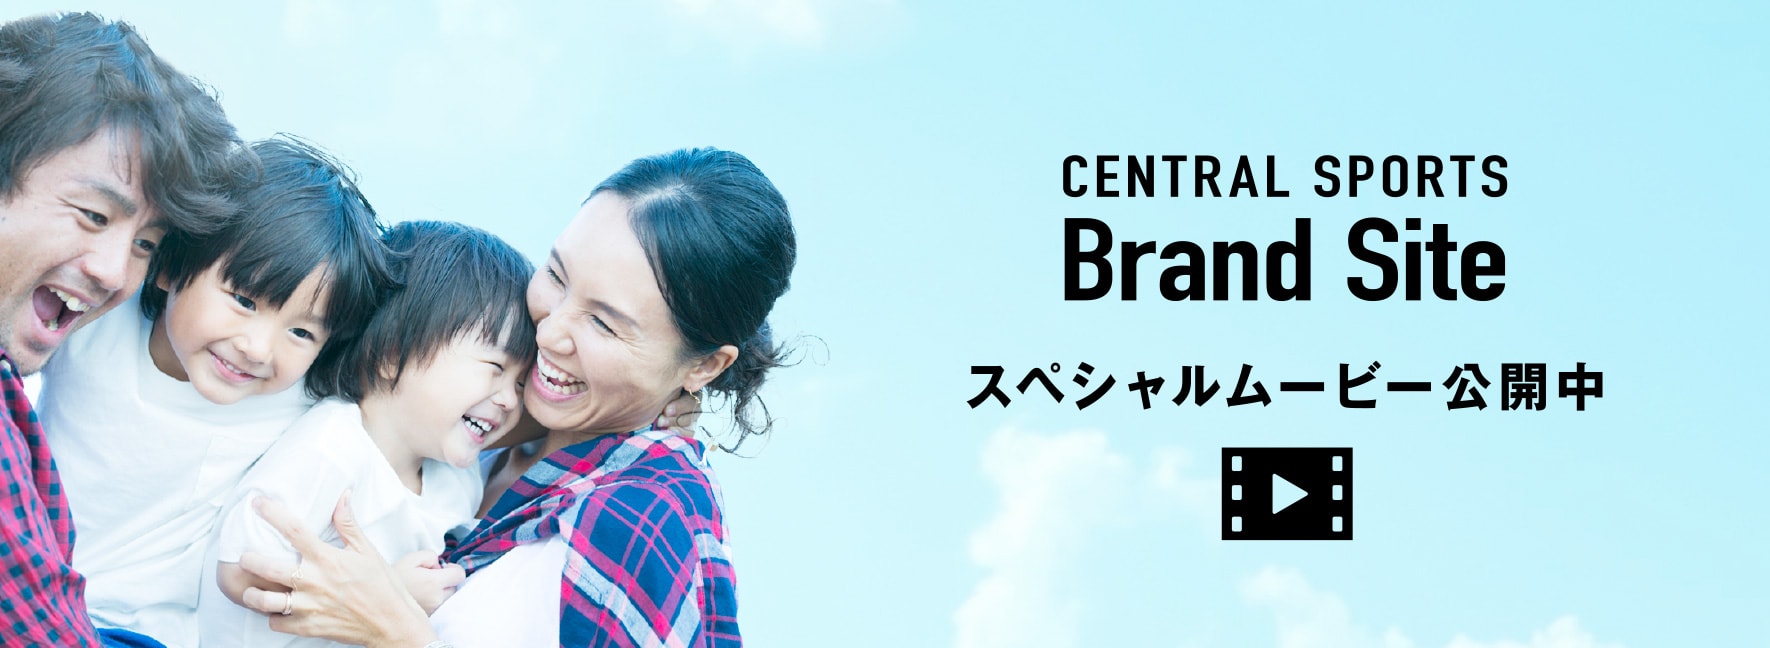 CENTRAL SPORTS Brand Site スペシャルムービー公開中